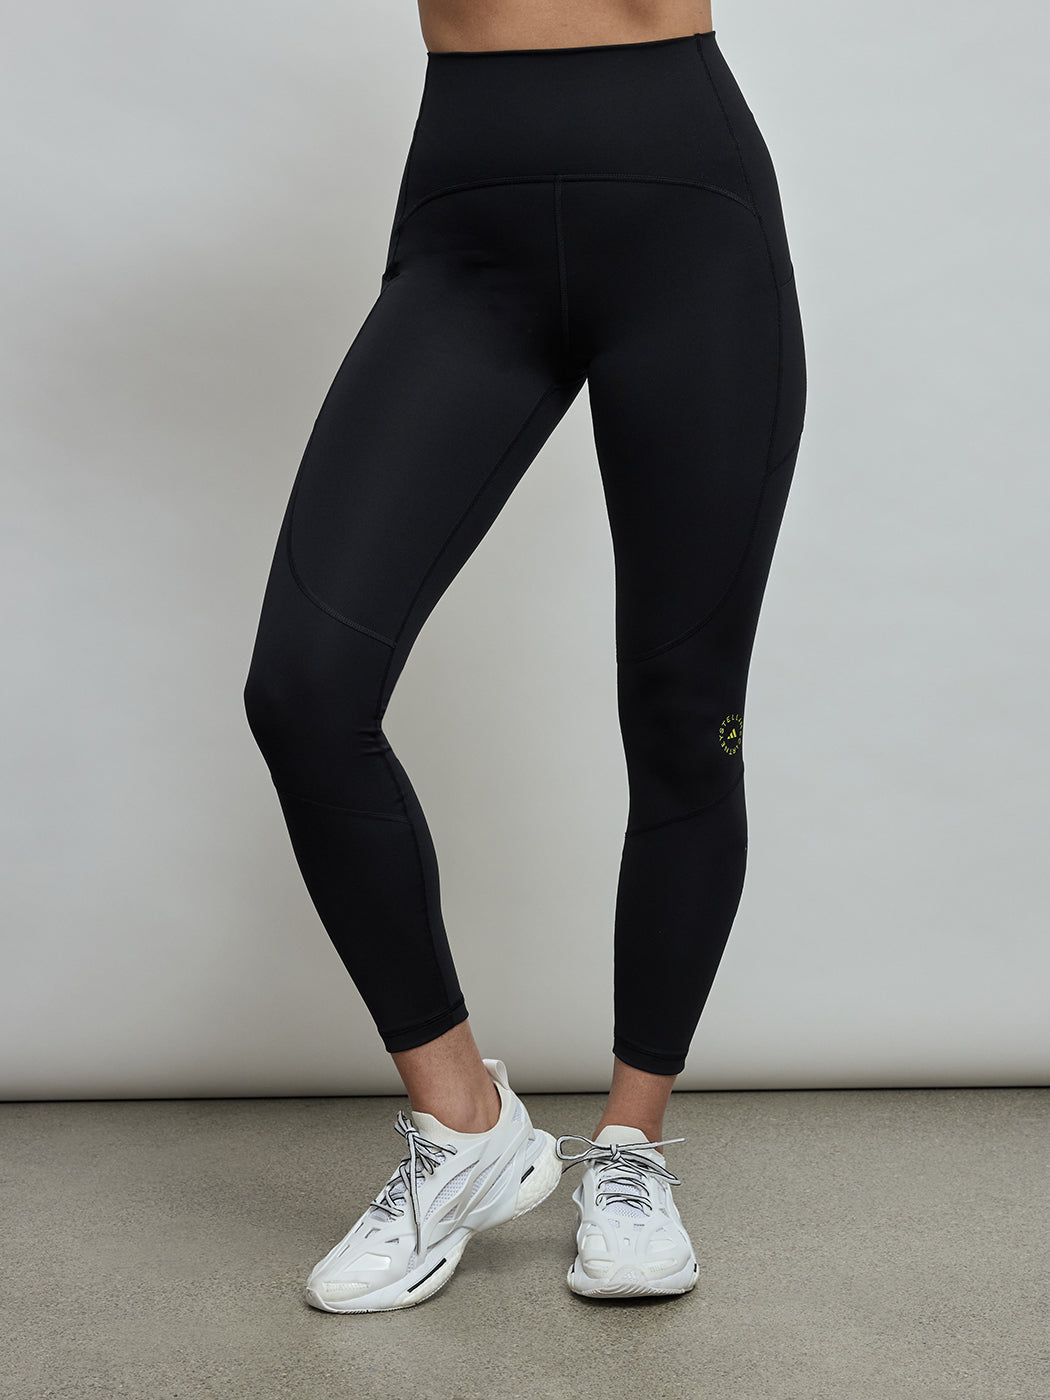 adidas by Stella McCartney 7/8 Yoga Leggings - Black, Women yoga